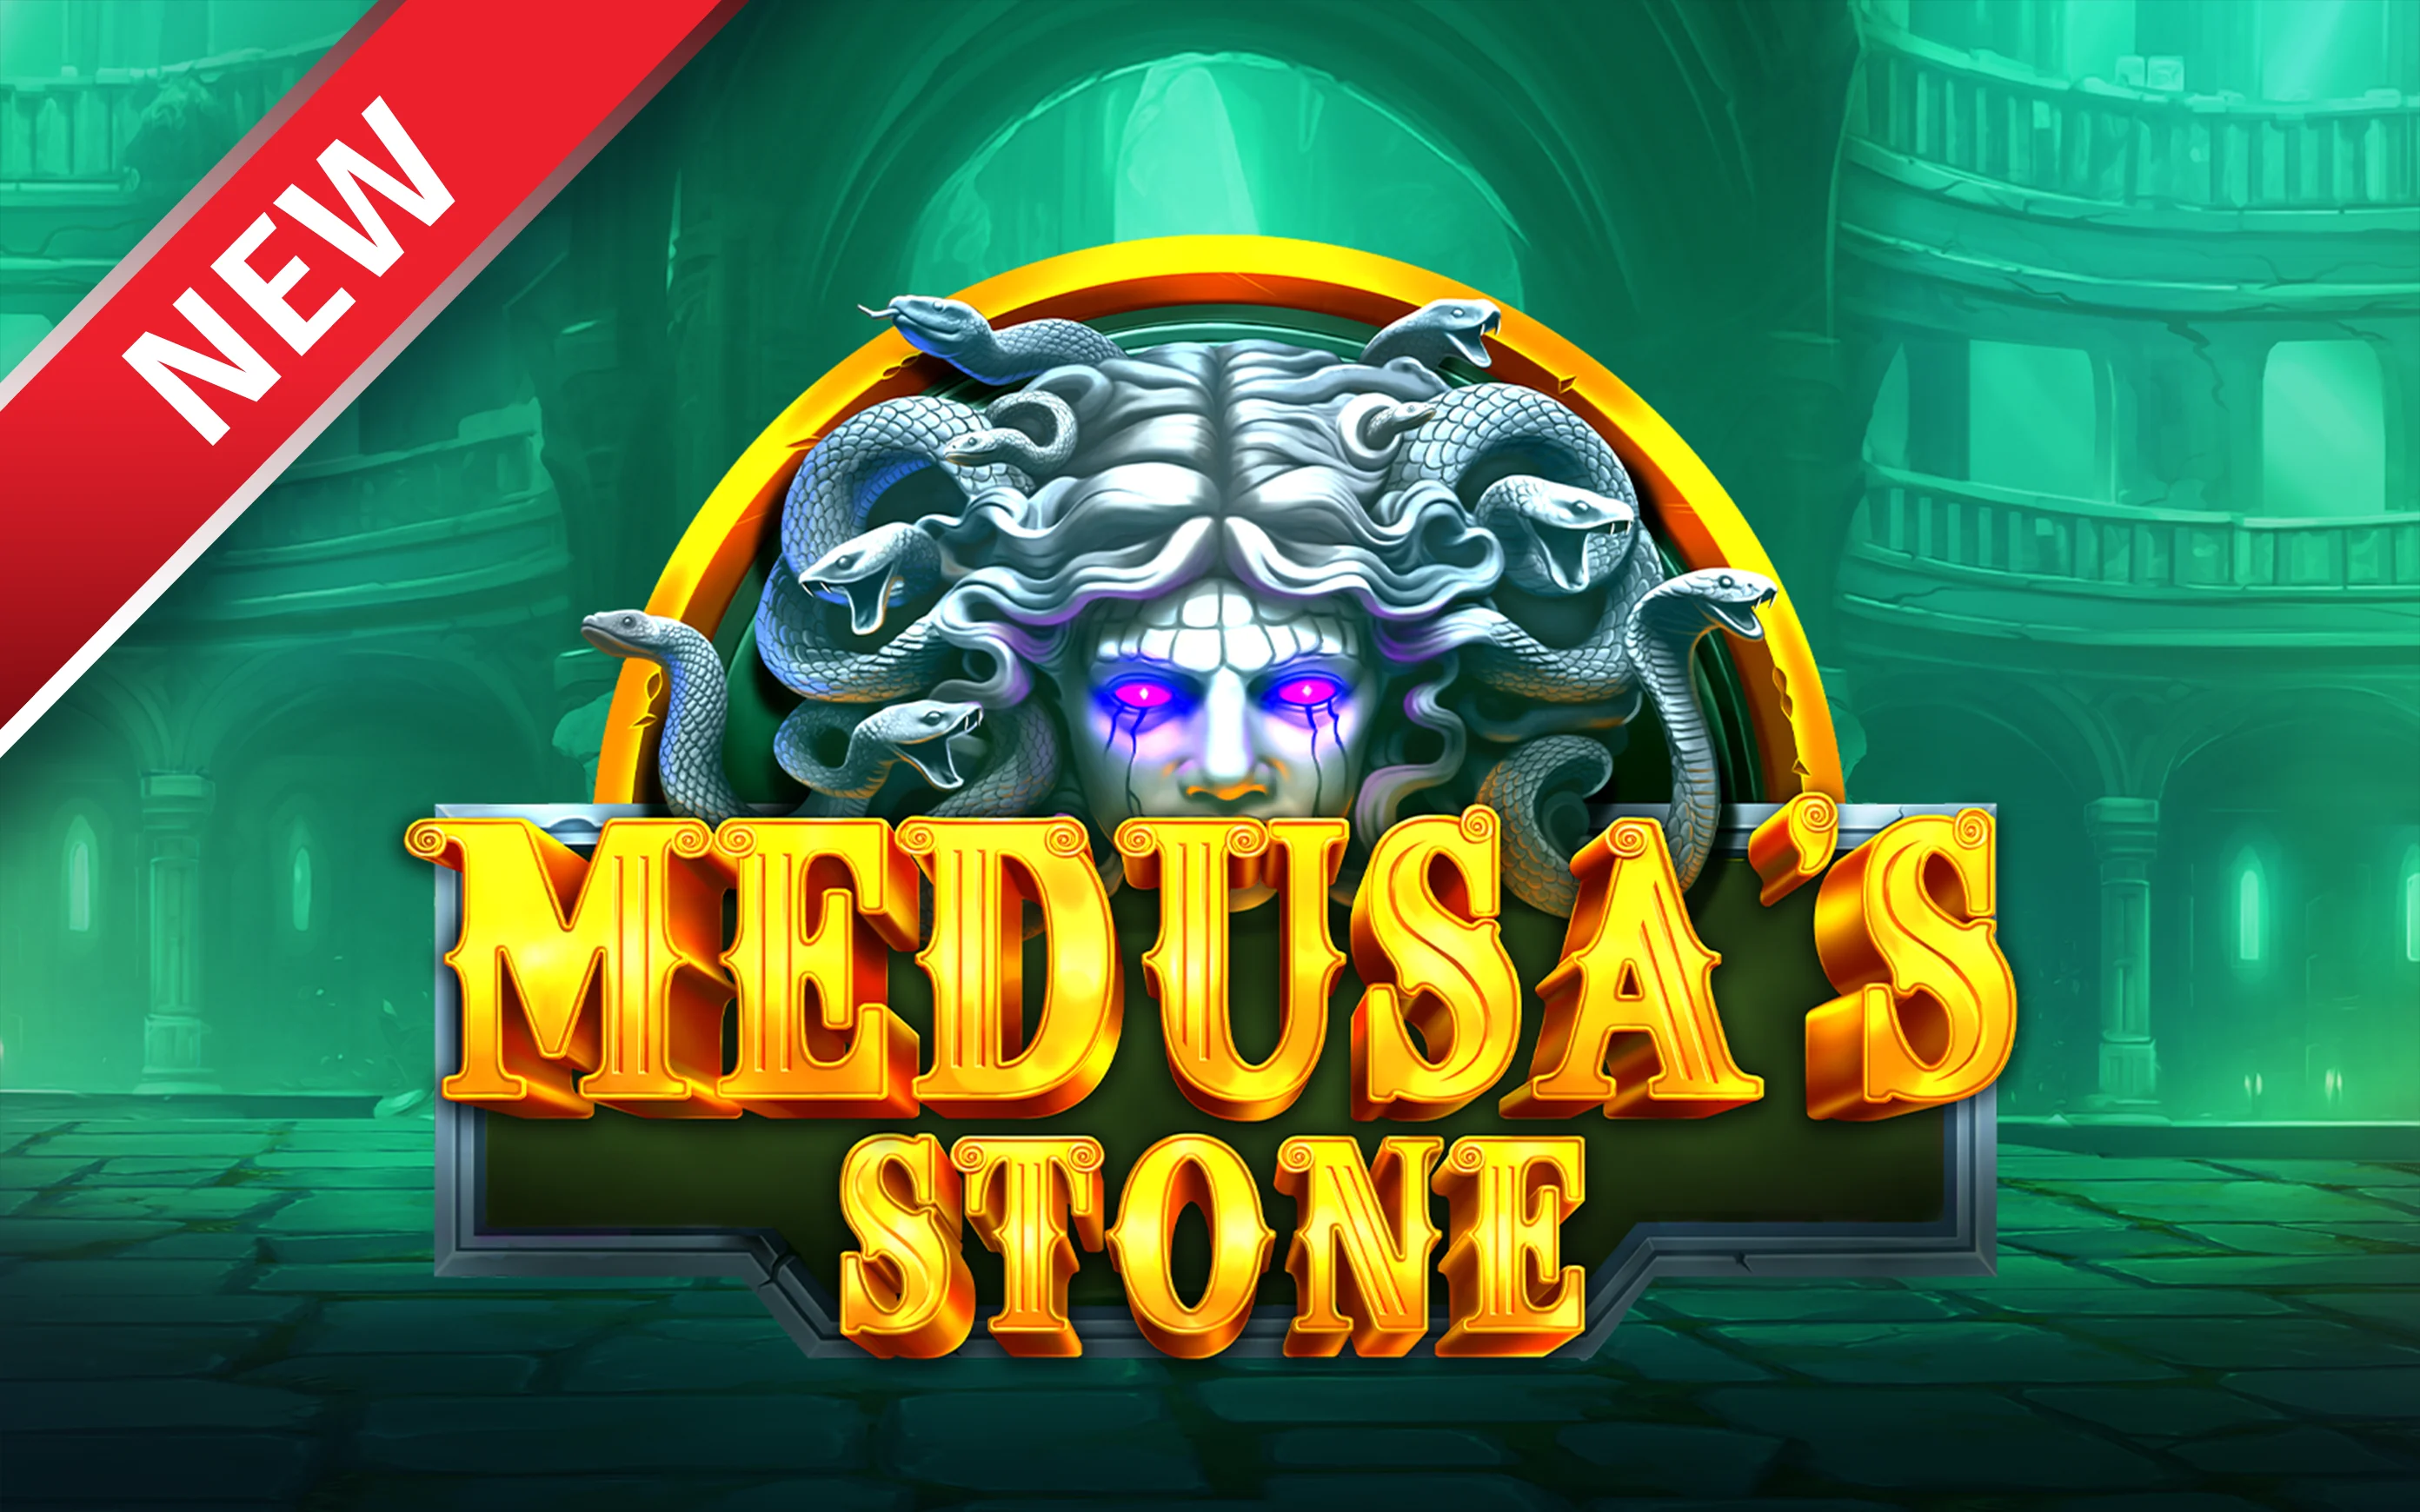 Zagraj w Medusa’s Stone w kasynie online Starcasino.be